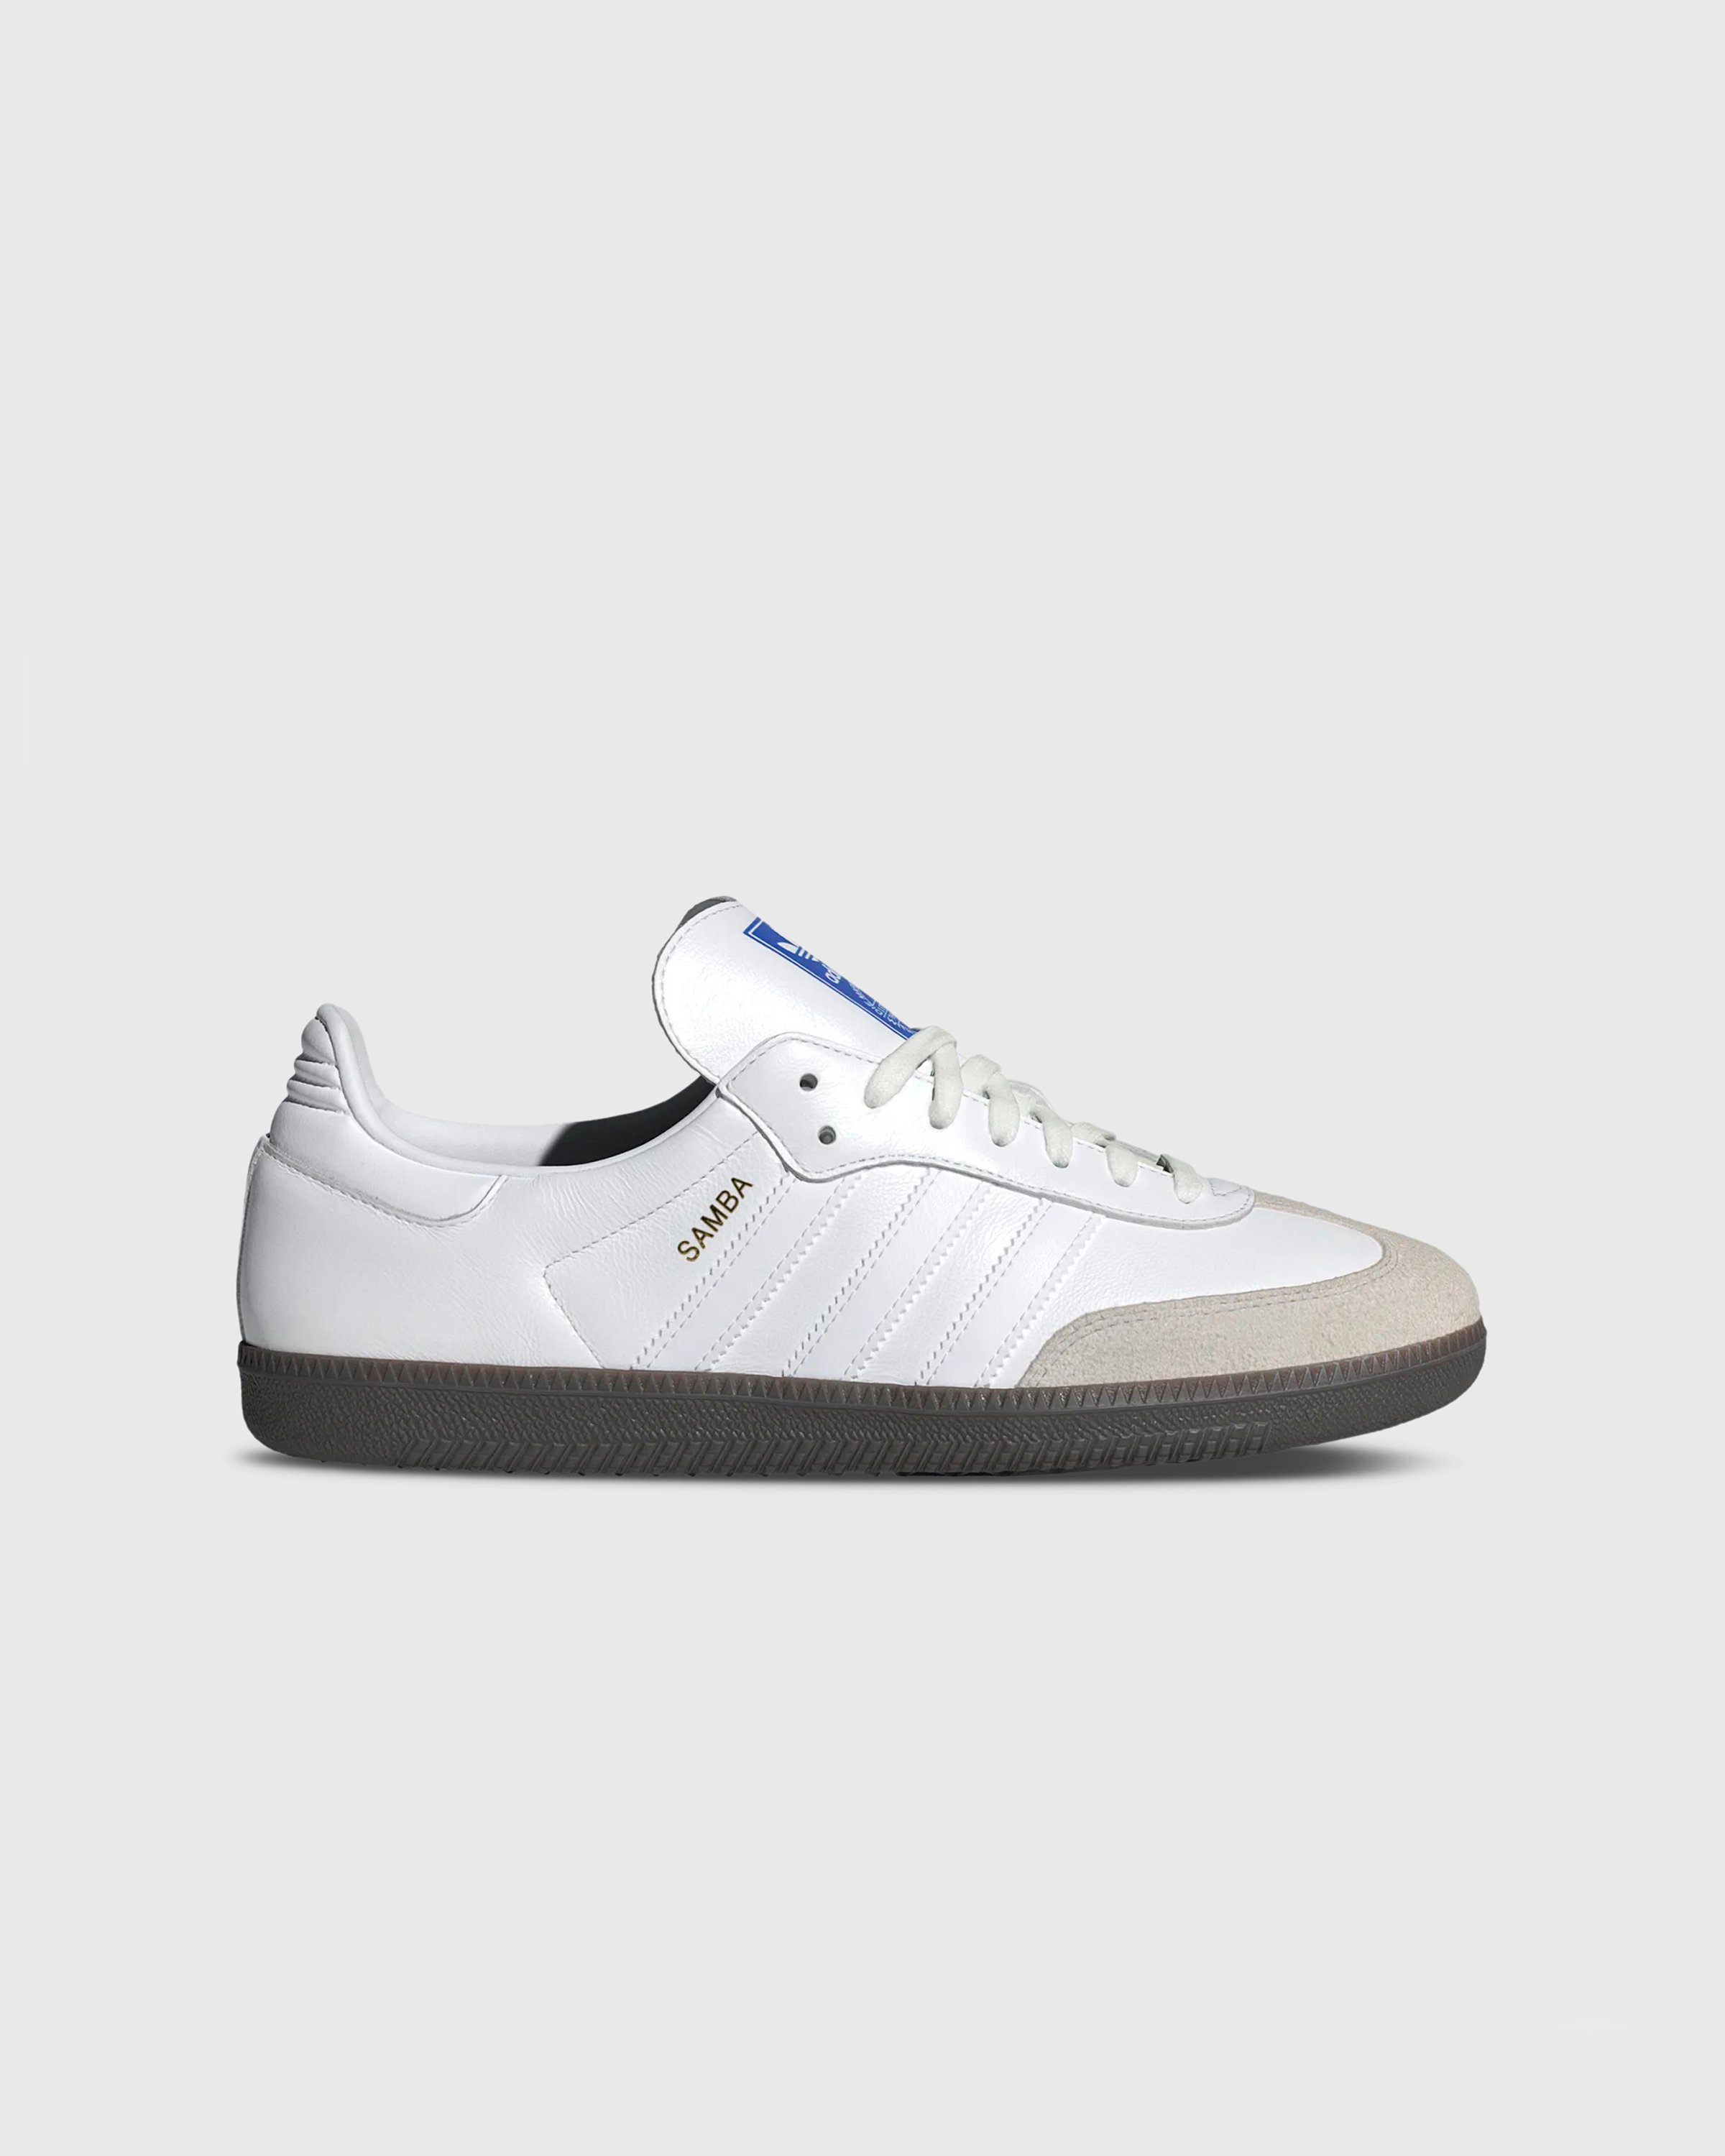 Adidas - SAMBA OG            FTWWHT/FTWWHT/GUM5 - Footwear - White - Image 1